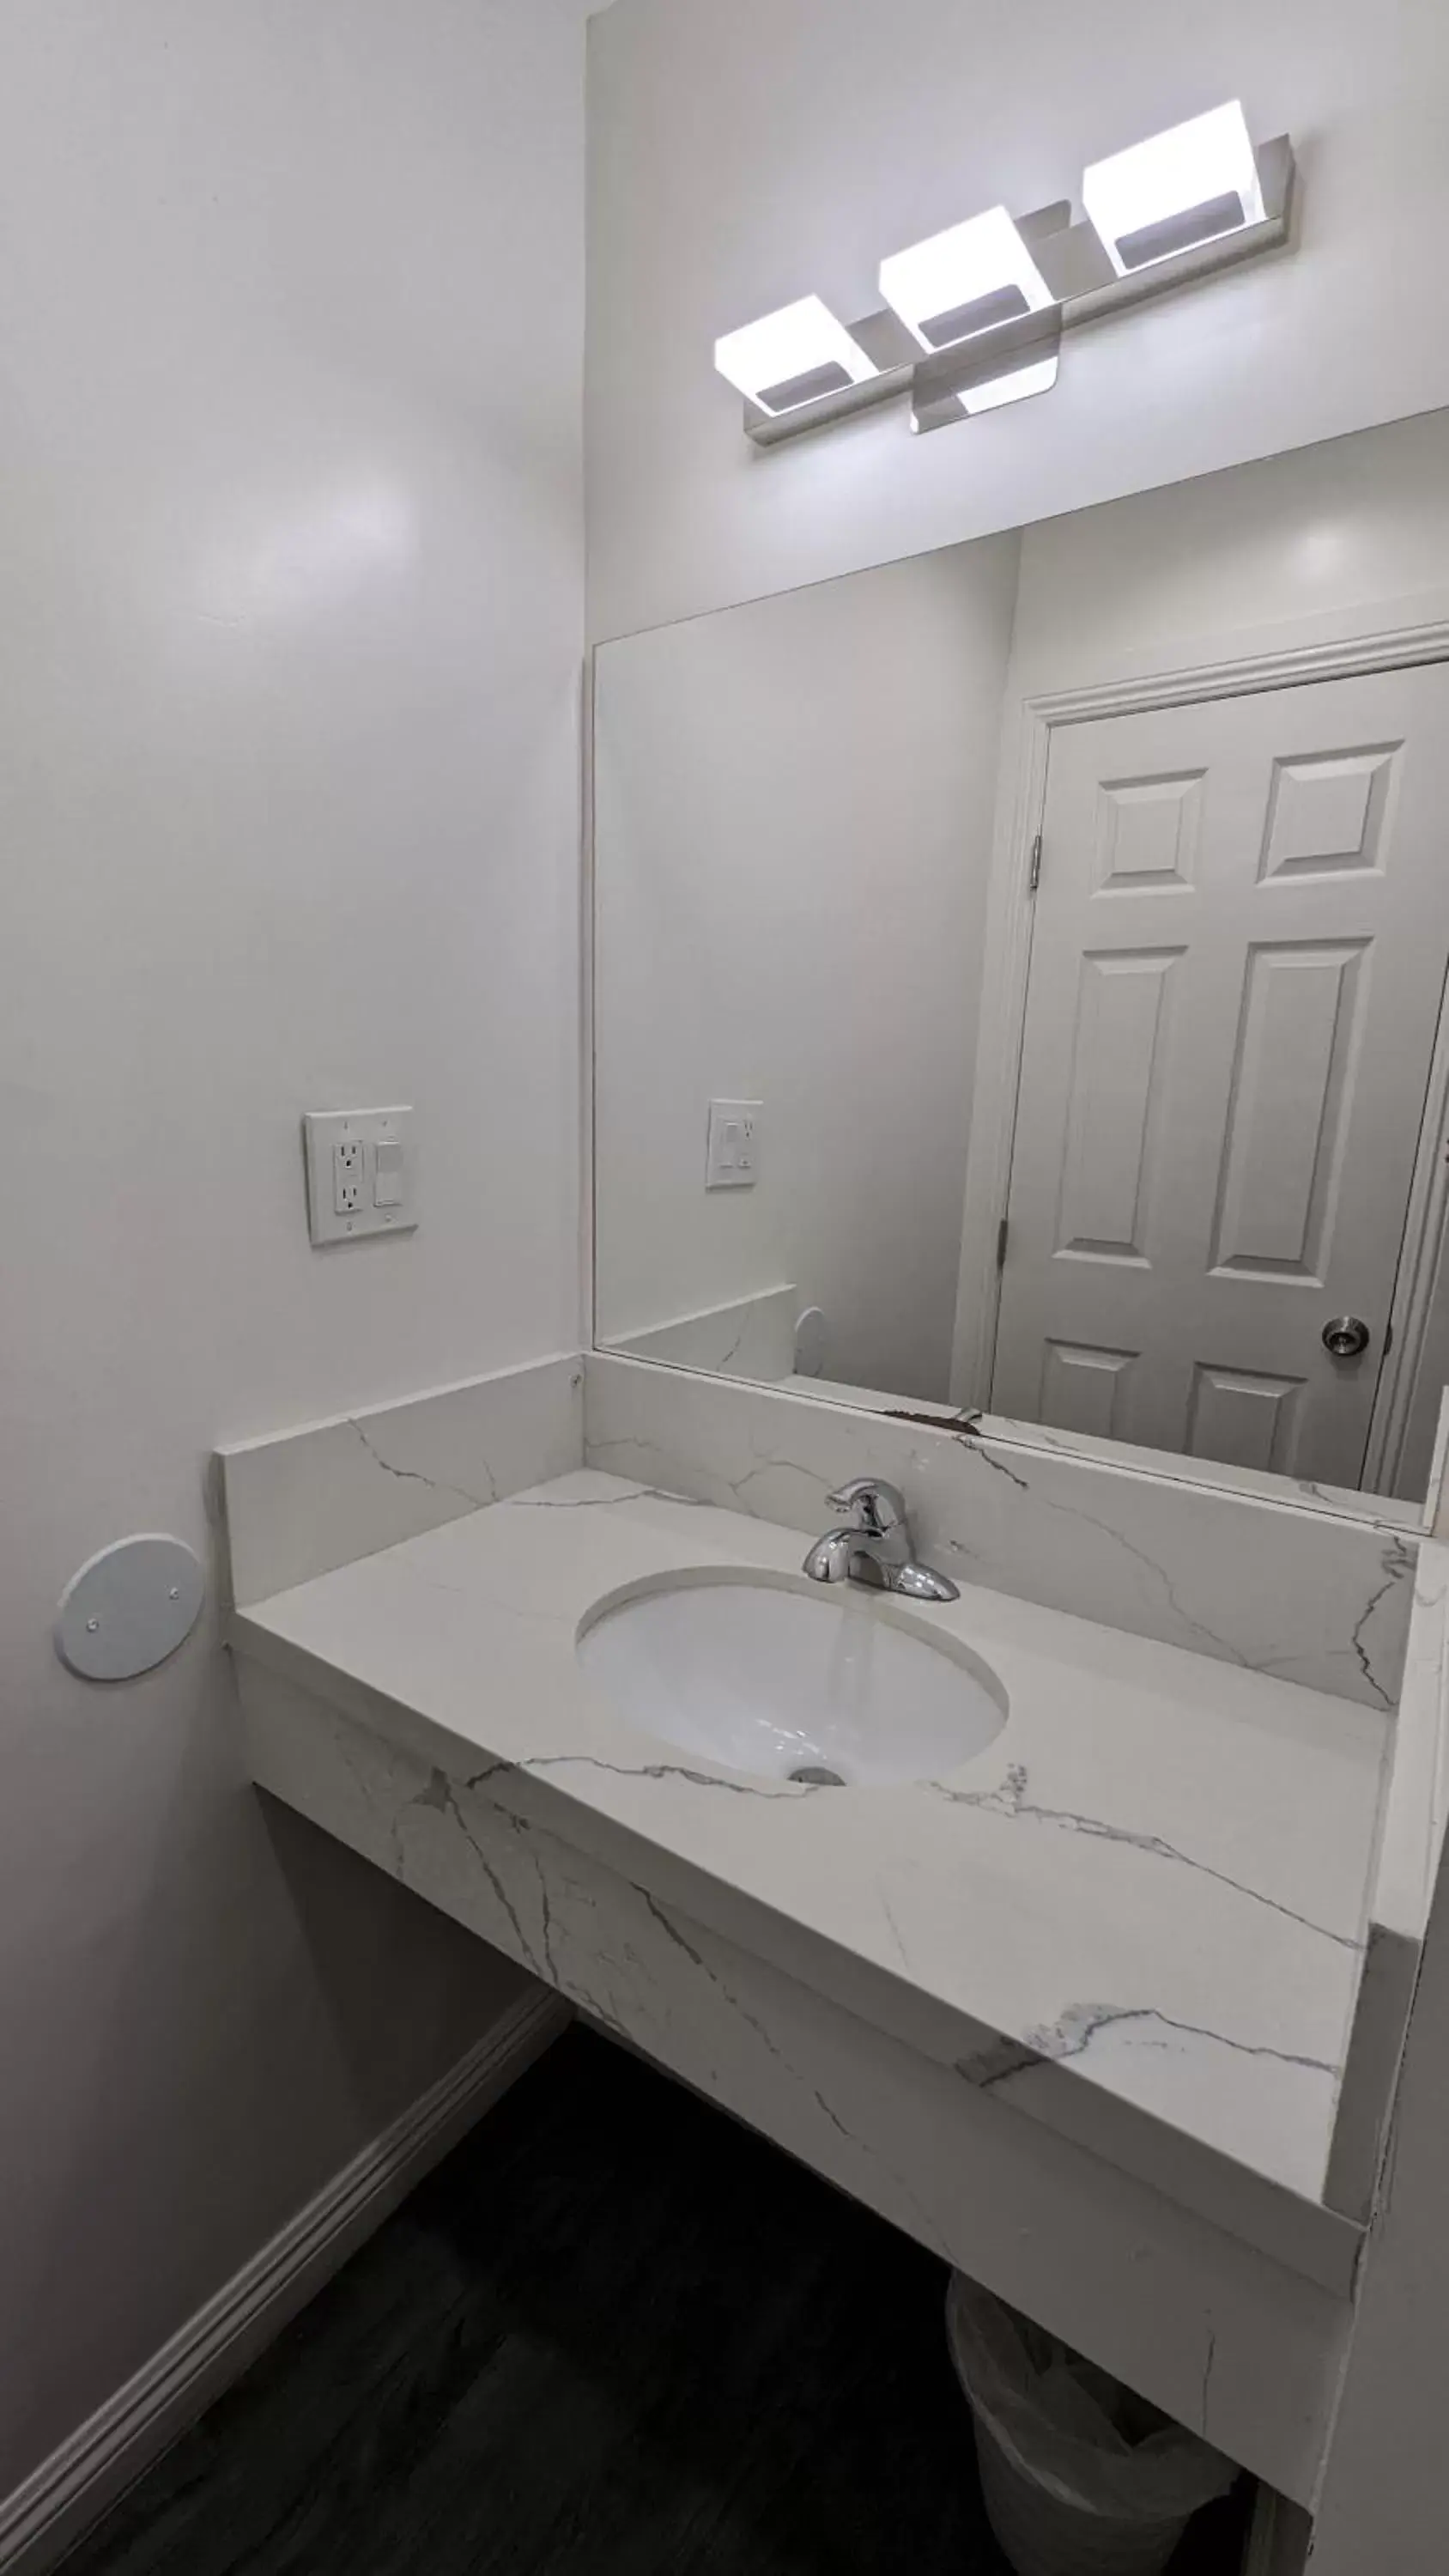 Bathroom in Airport Motel - Inglewood